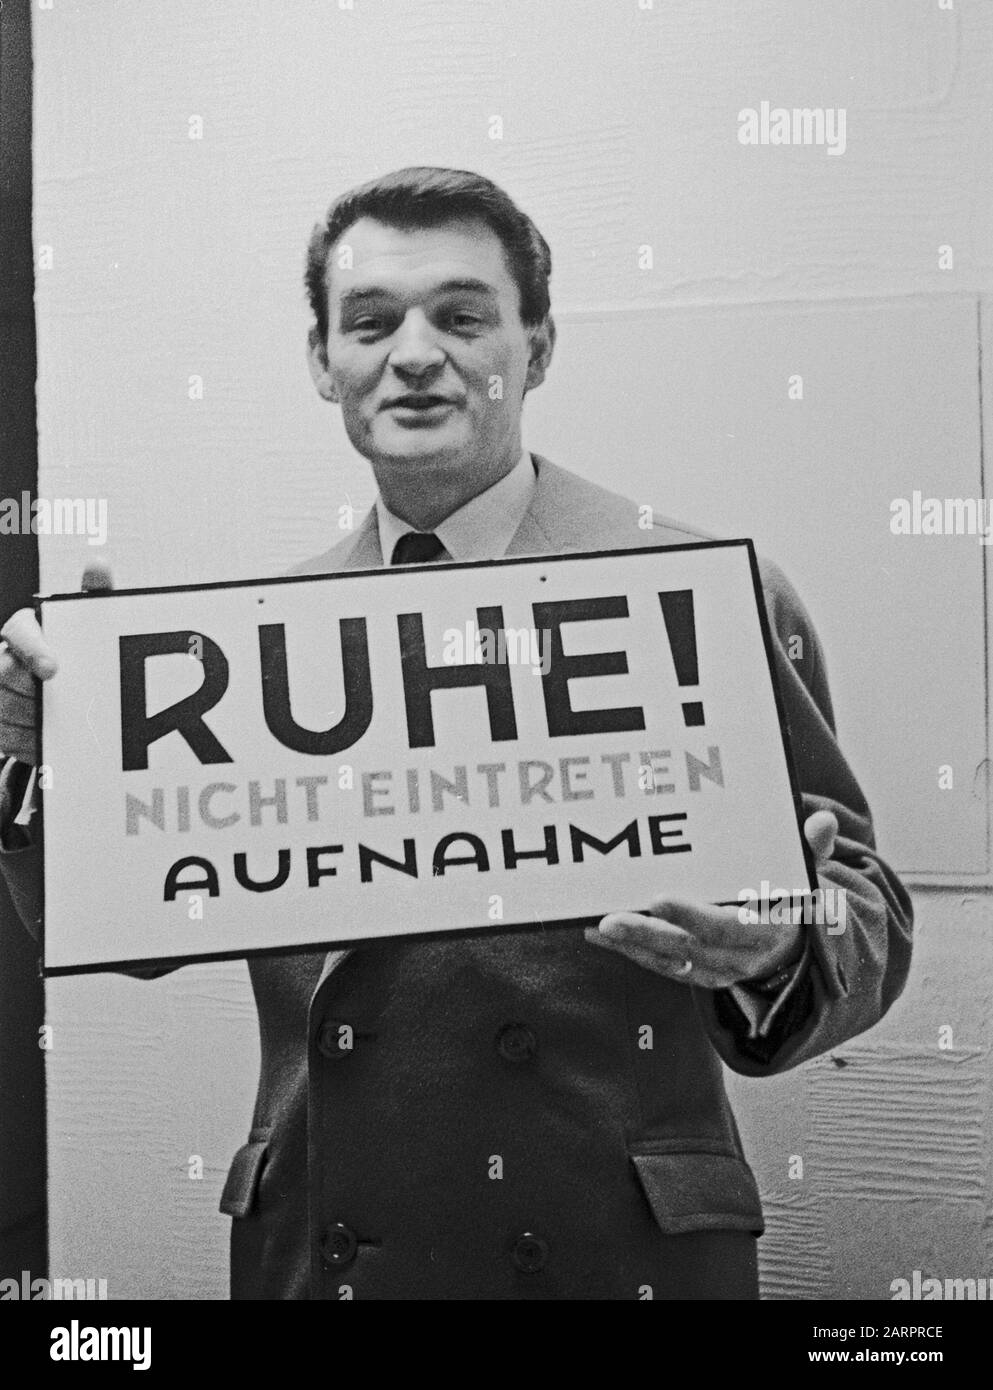 Ivo Robic, jugoslawischer und kroatischer Schlagersänger, Deutschland um 1965. Yugoslavian and Croatian singer Ivo Robic, Germany around 1965. Stock Photo